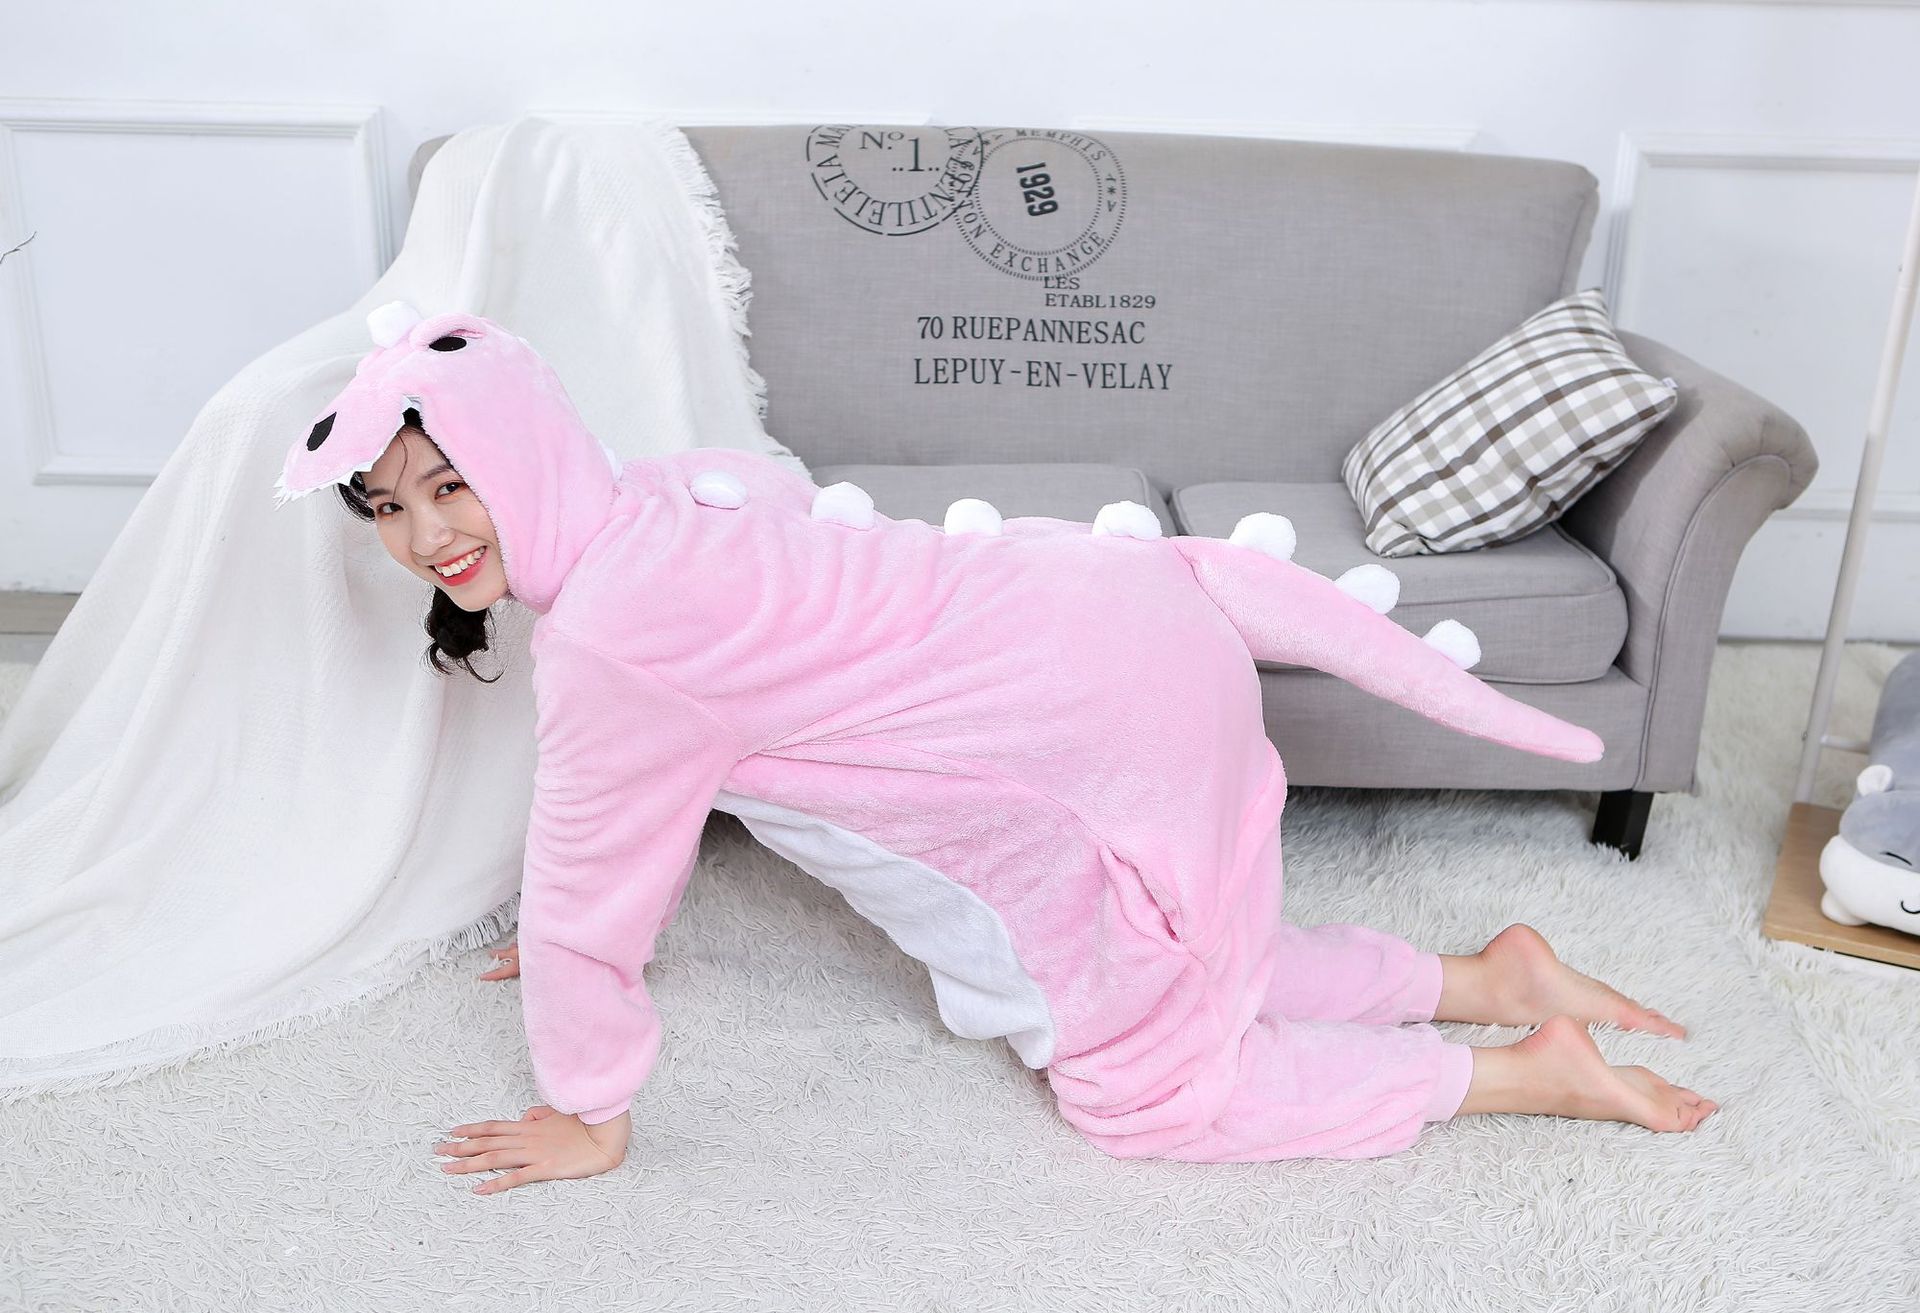 Bộ Đồ thú Khủng Long hồng liền thân lông mịn Pijama dành Cho Người Lớn và Trẻ Em kiểu dáng Động Vật Hoạt Hình Cosplay Đầy Đủ Các Mẫu Mã Kích Cỡ nhiều màu đón giáng sinh HOT độc và lạ